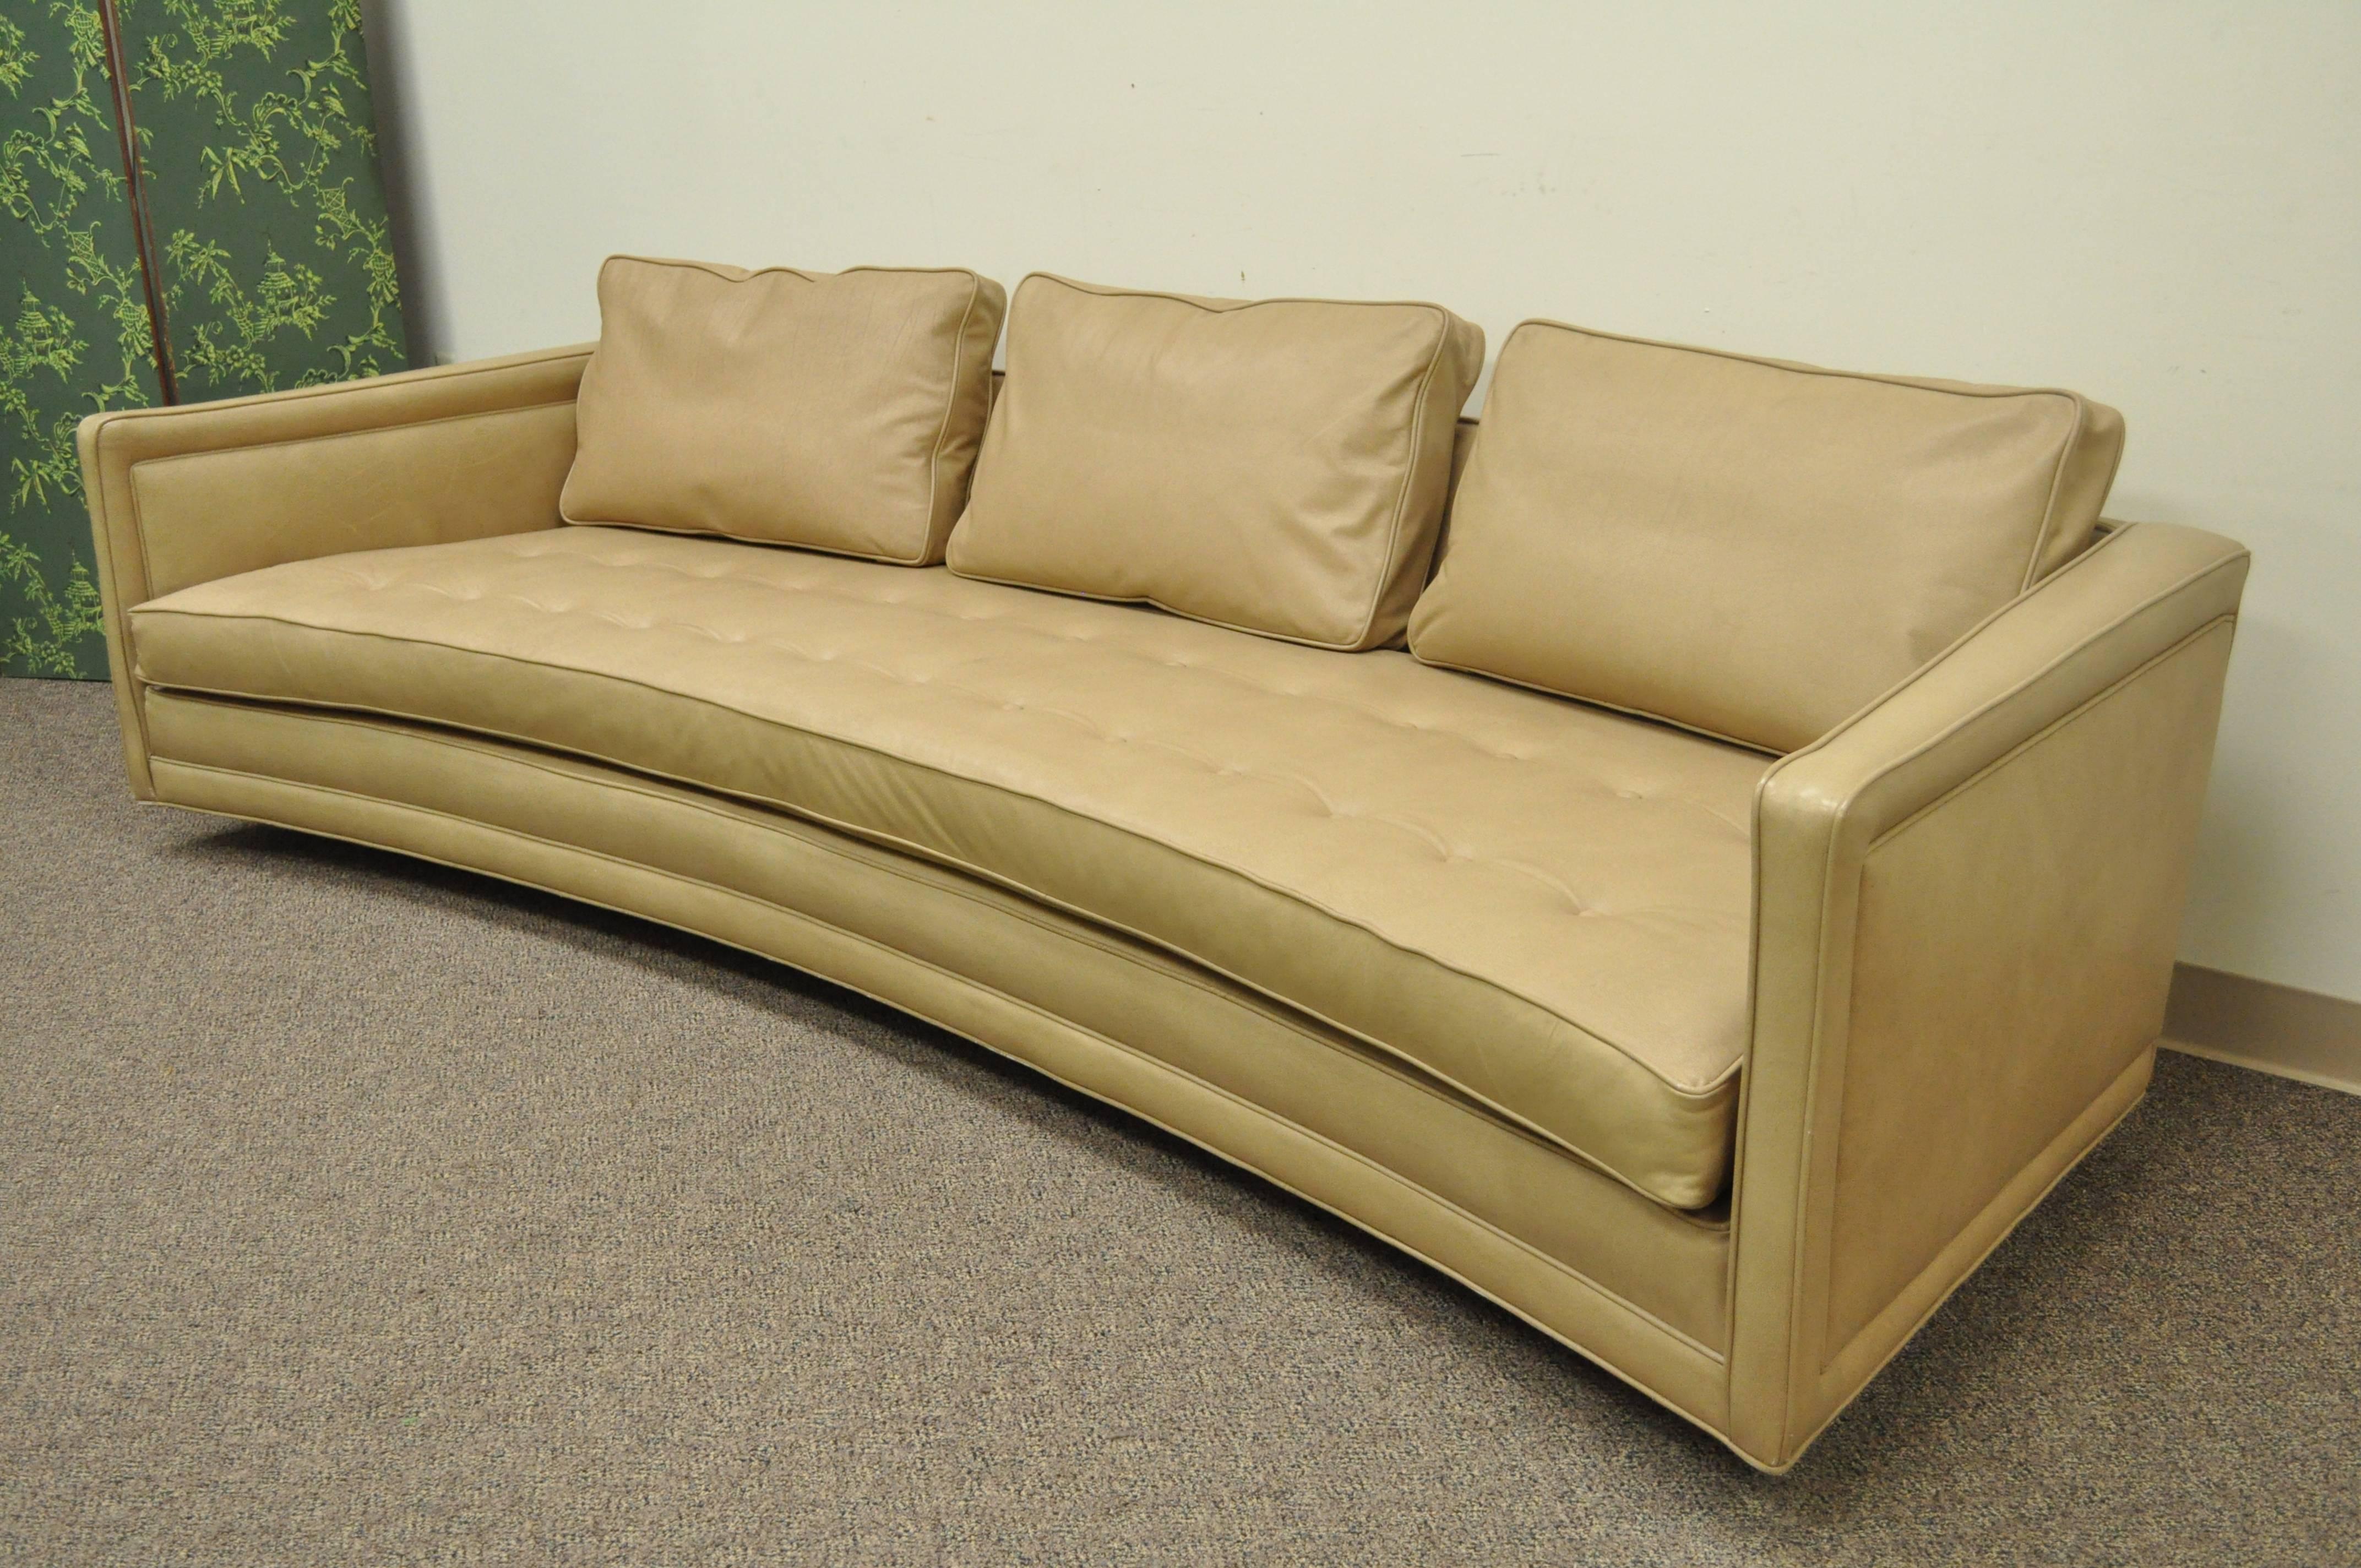 Atemberaubendes, skulpturales 105-Zoll-Sofa von Harvey Probber in Original-Leder und getufteter Polsterung. Der Artikel zeichnet sich durch klare, moderne Linien, lose Kissen und einen geschwungenen, schwimmenden Massivholzrahmen aus, der auf